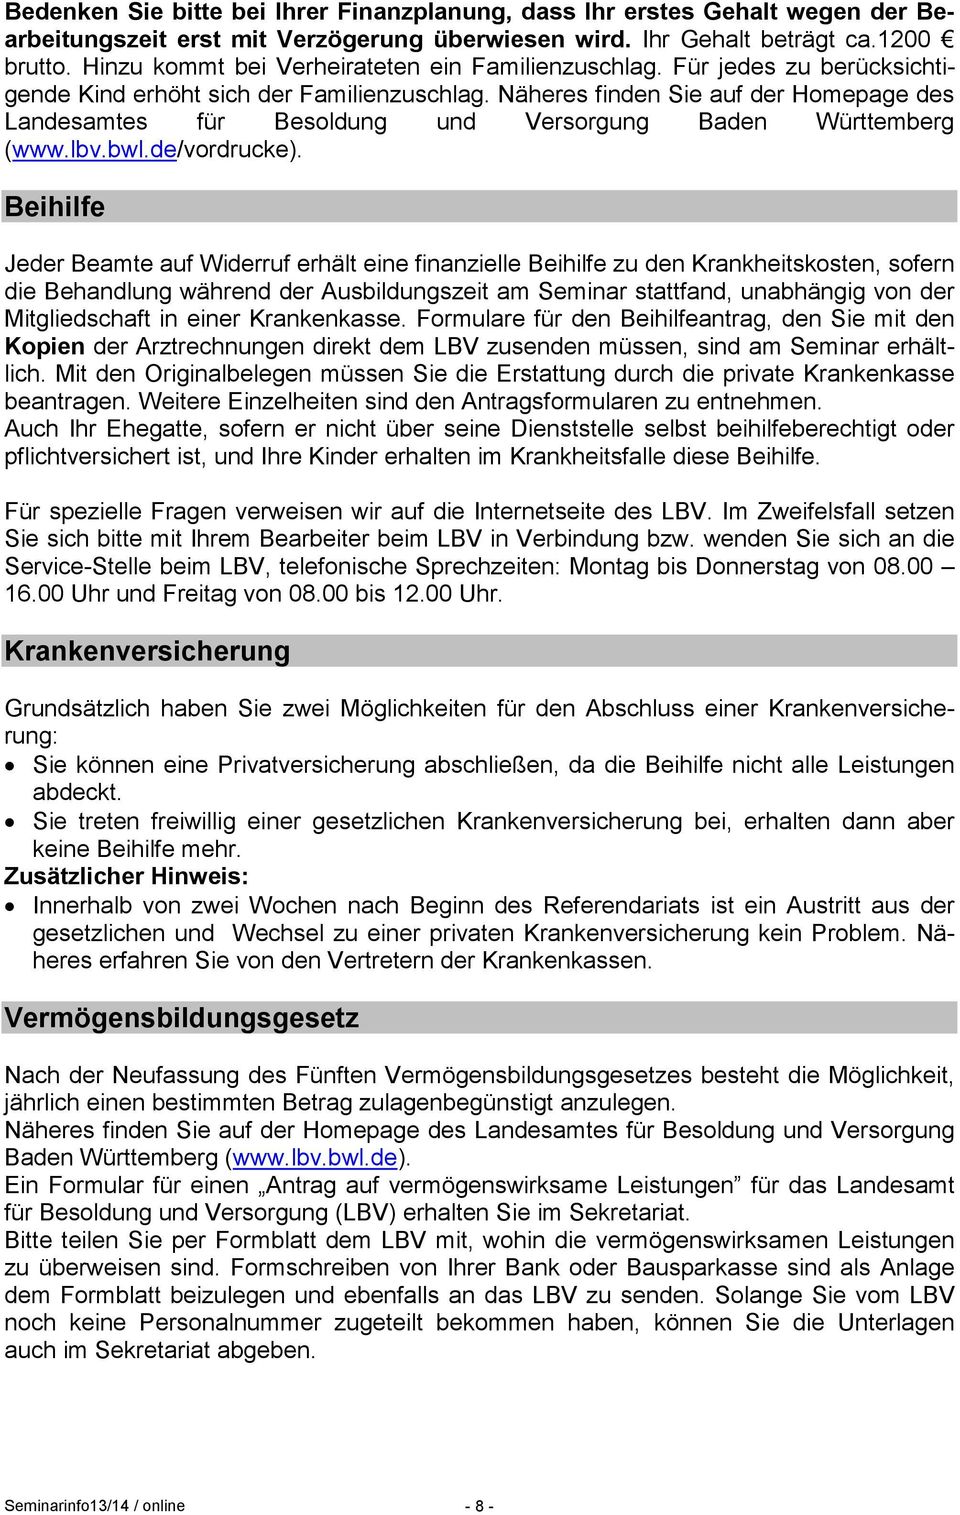 Näheres finden Sie auf der Homepage des Landesamtes für Besoldung und Versorgung Baden Württemberg (www.lbv.bwl.de/vordrucke).